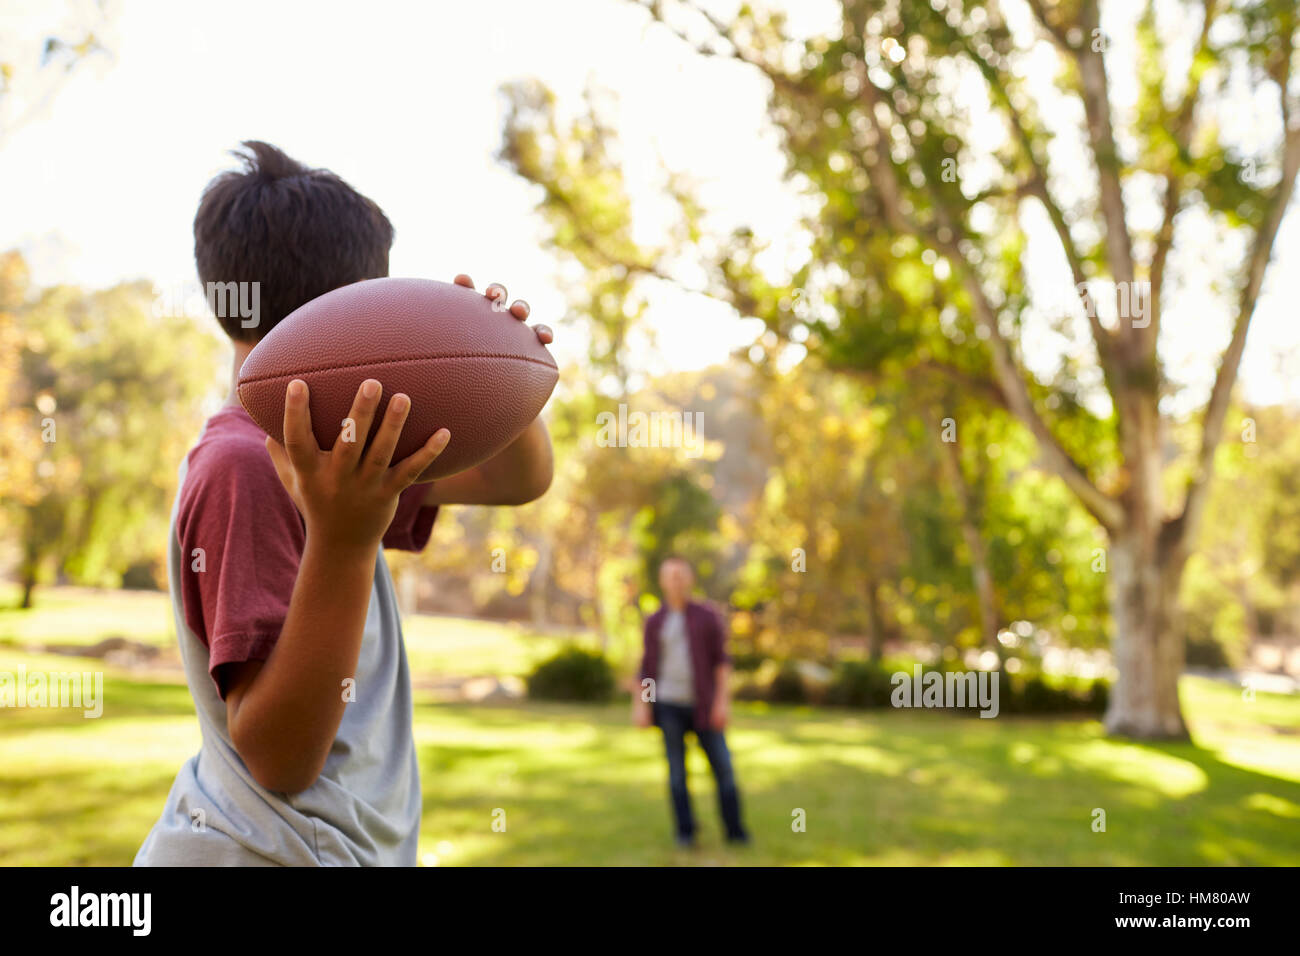 Ragazzo giovane lanciando la palla a papà nel parco, la messa a fuoco su oggetti in primo piano Foto Stock